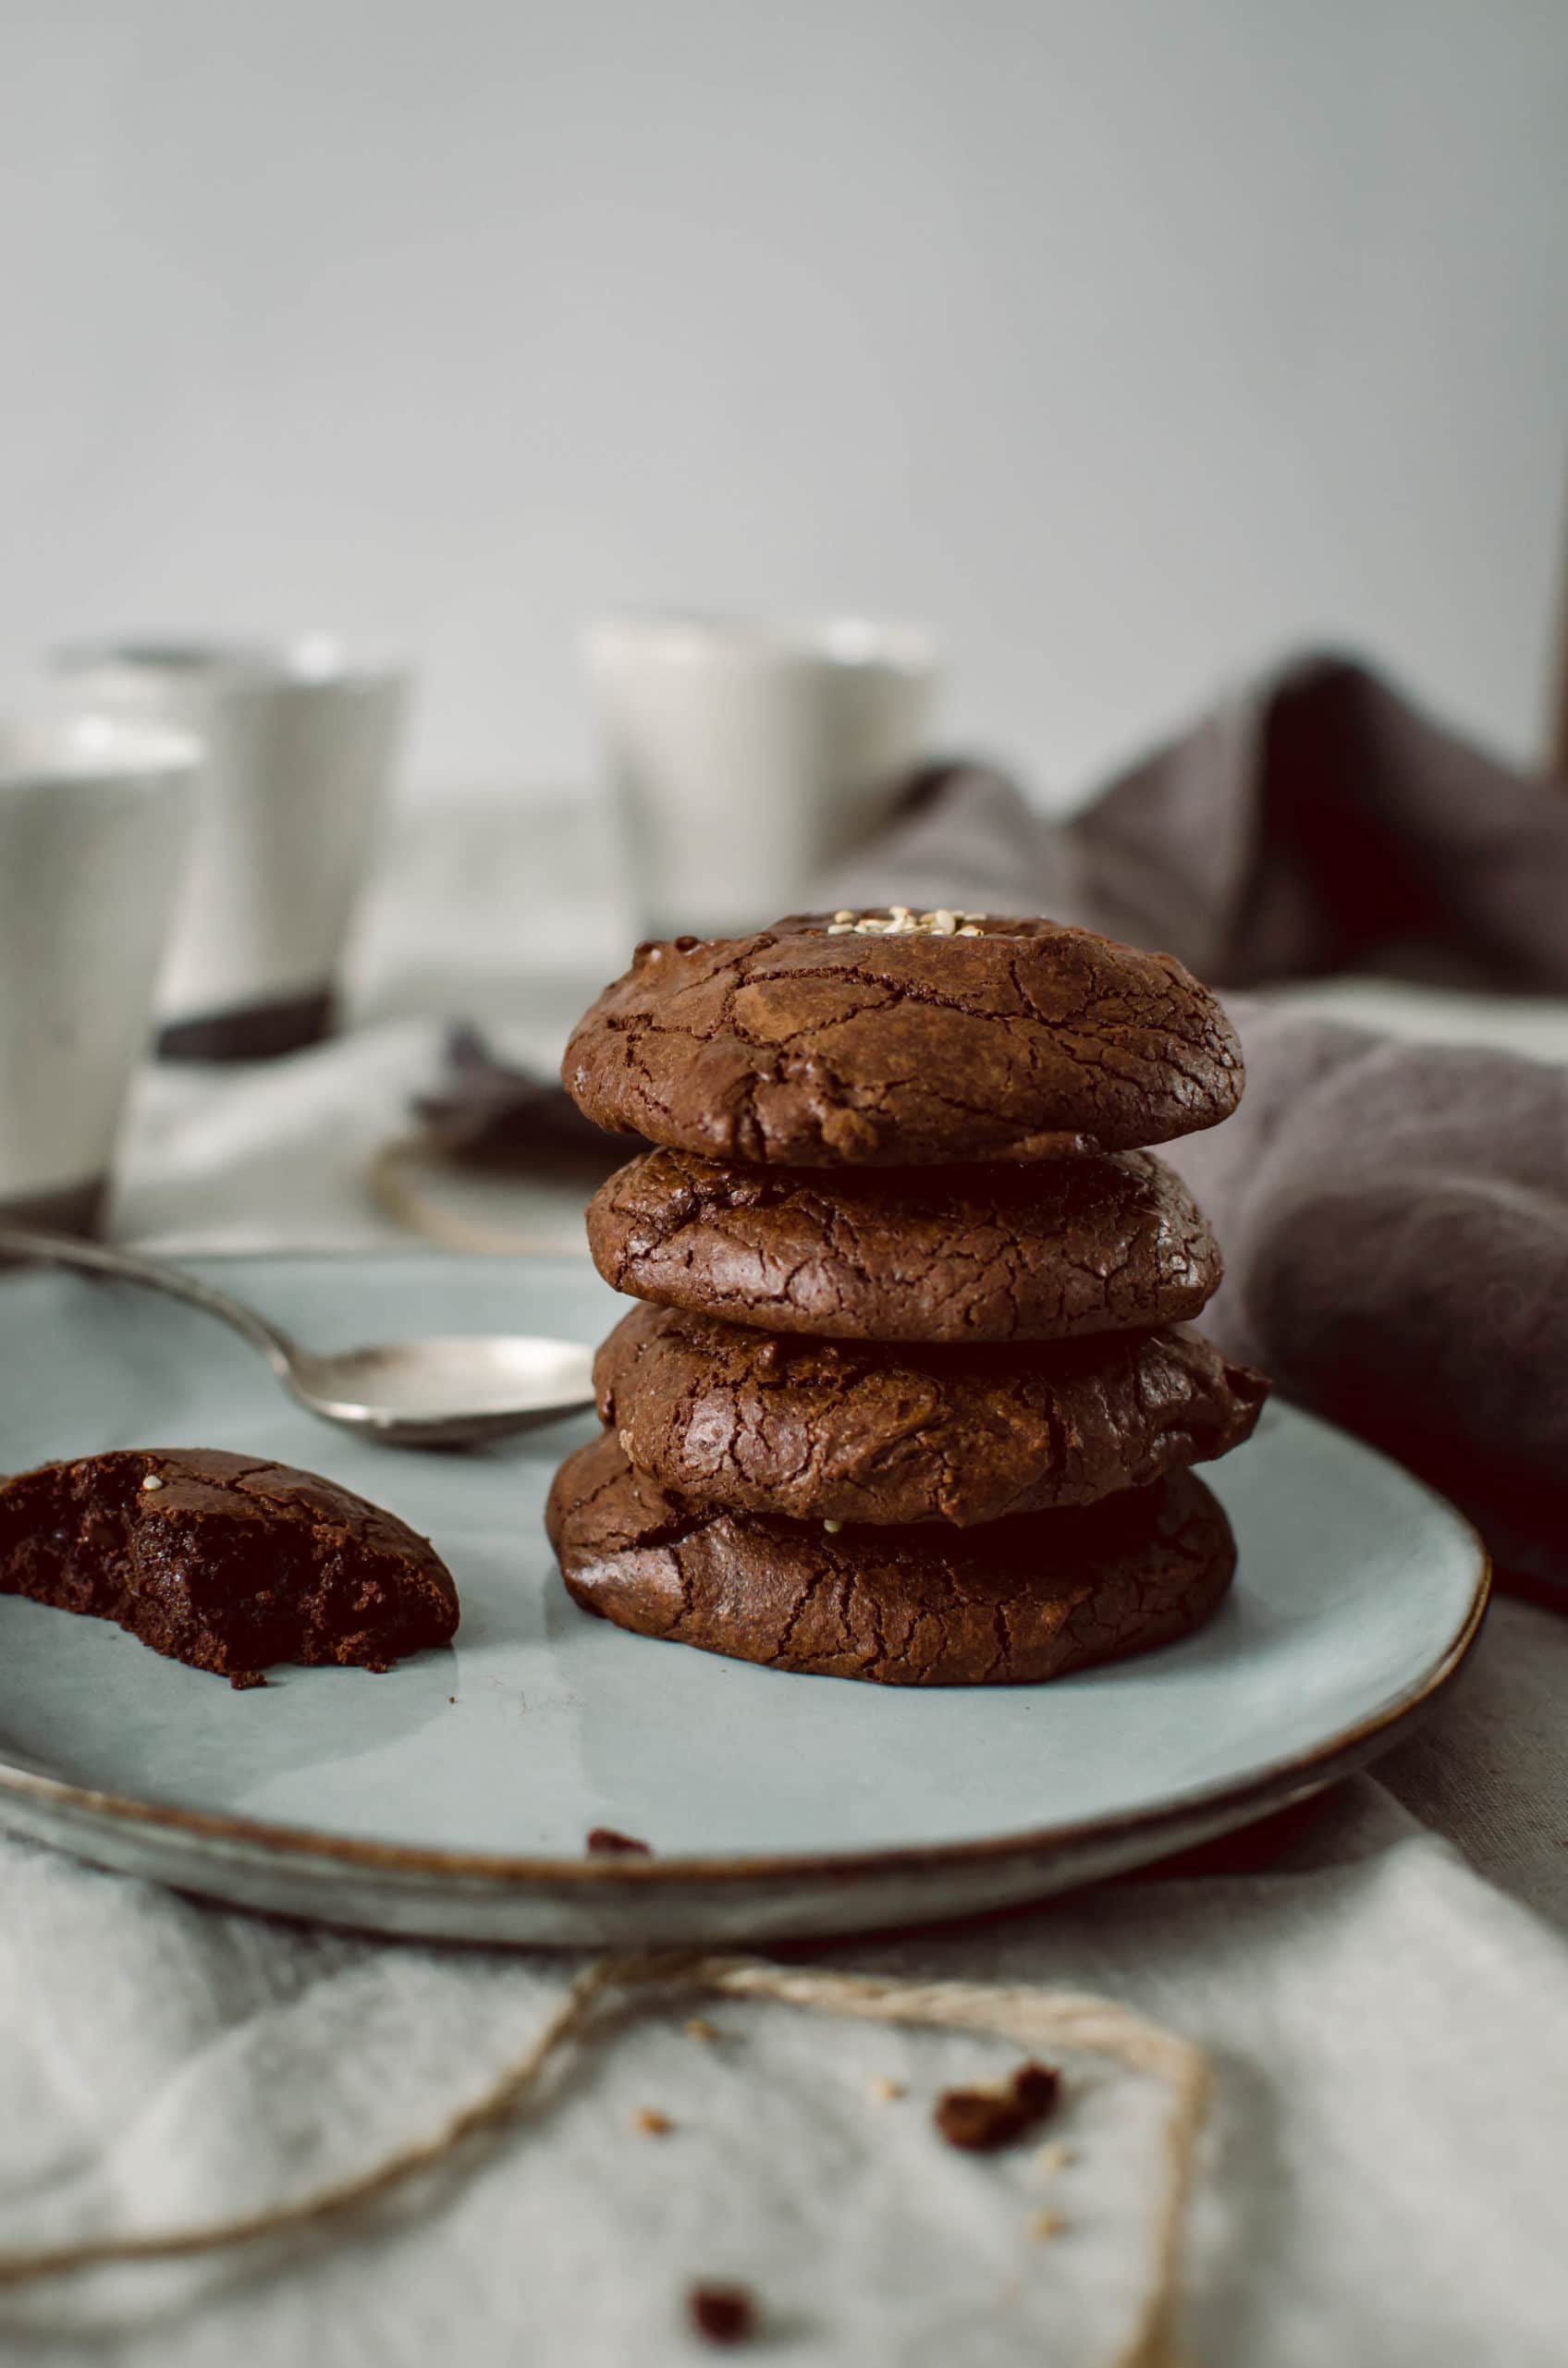 Cookies tout chocolat - Recette facile et rapide - Tangerine Zest